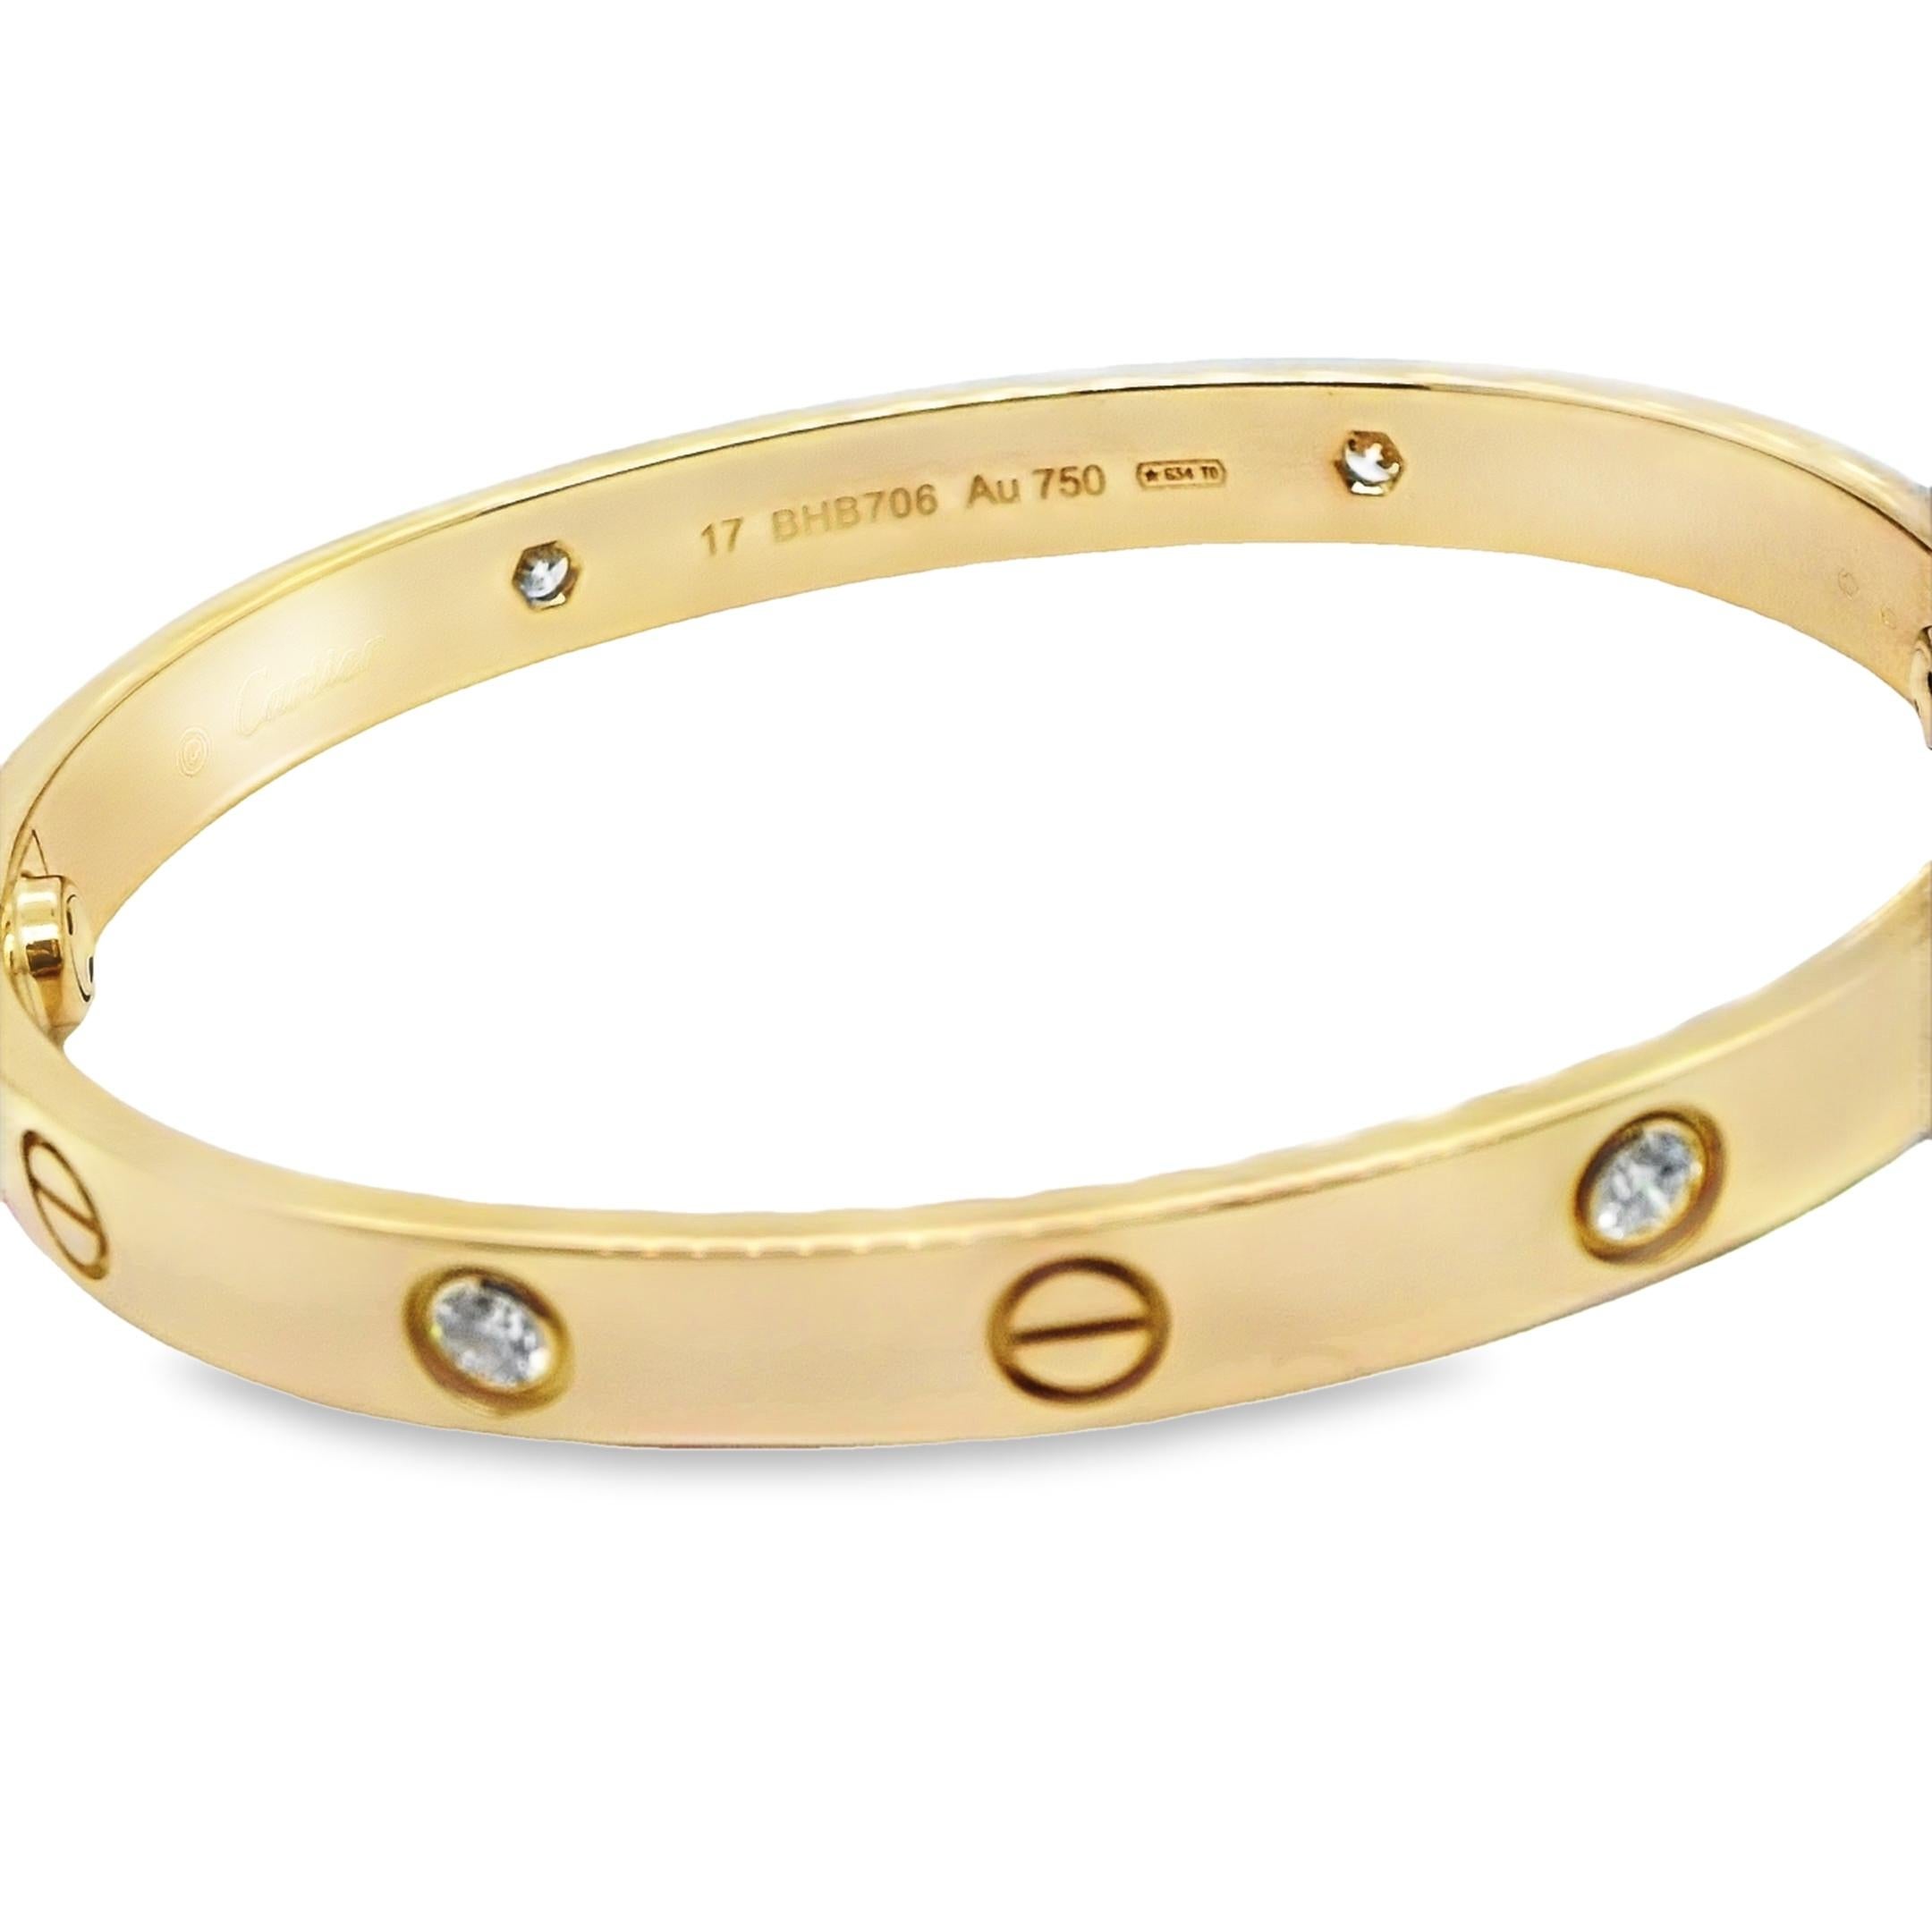 Cartier Love-Armband, besetzt mit 4 Diamanten.

Das ikonische Cartier-Armband, Größe 17cm mit 4 Diamanten Ref: B6070017

Dieses erstaunliche schicke Armband ist vollständig in 18 Karat Gelbgold gefasst und mit 4 Diamanten mit einem Gesamtgewicht von